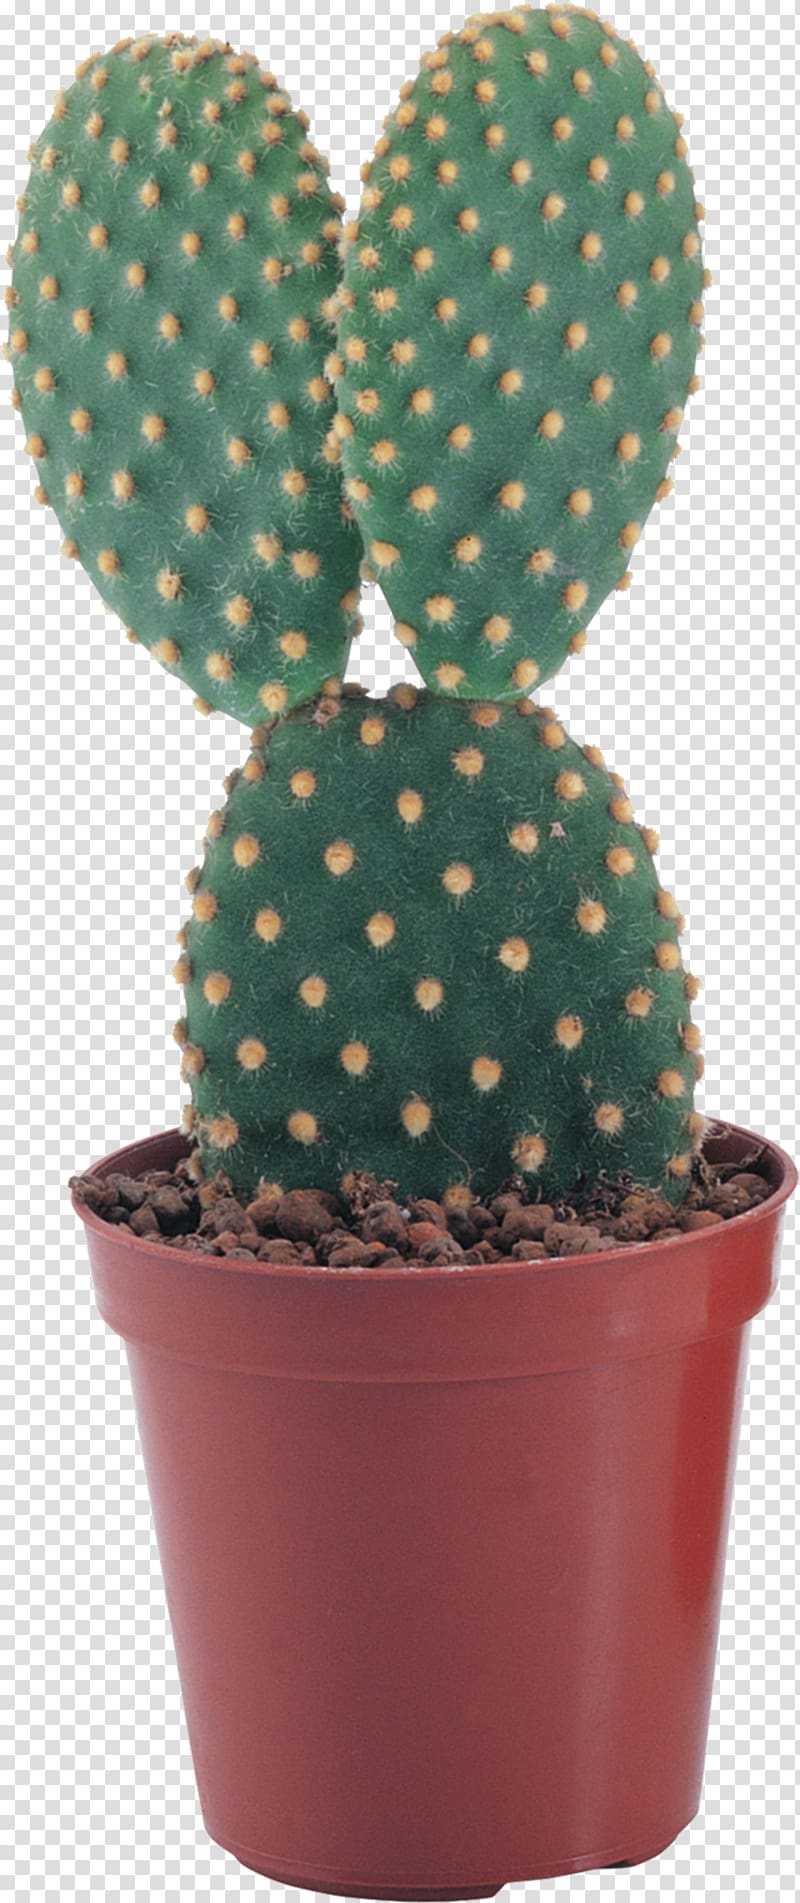 Pilosocereus Succulent plant , cactus transparent background PNG clipart